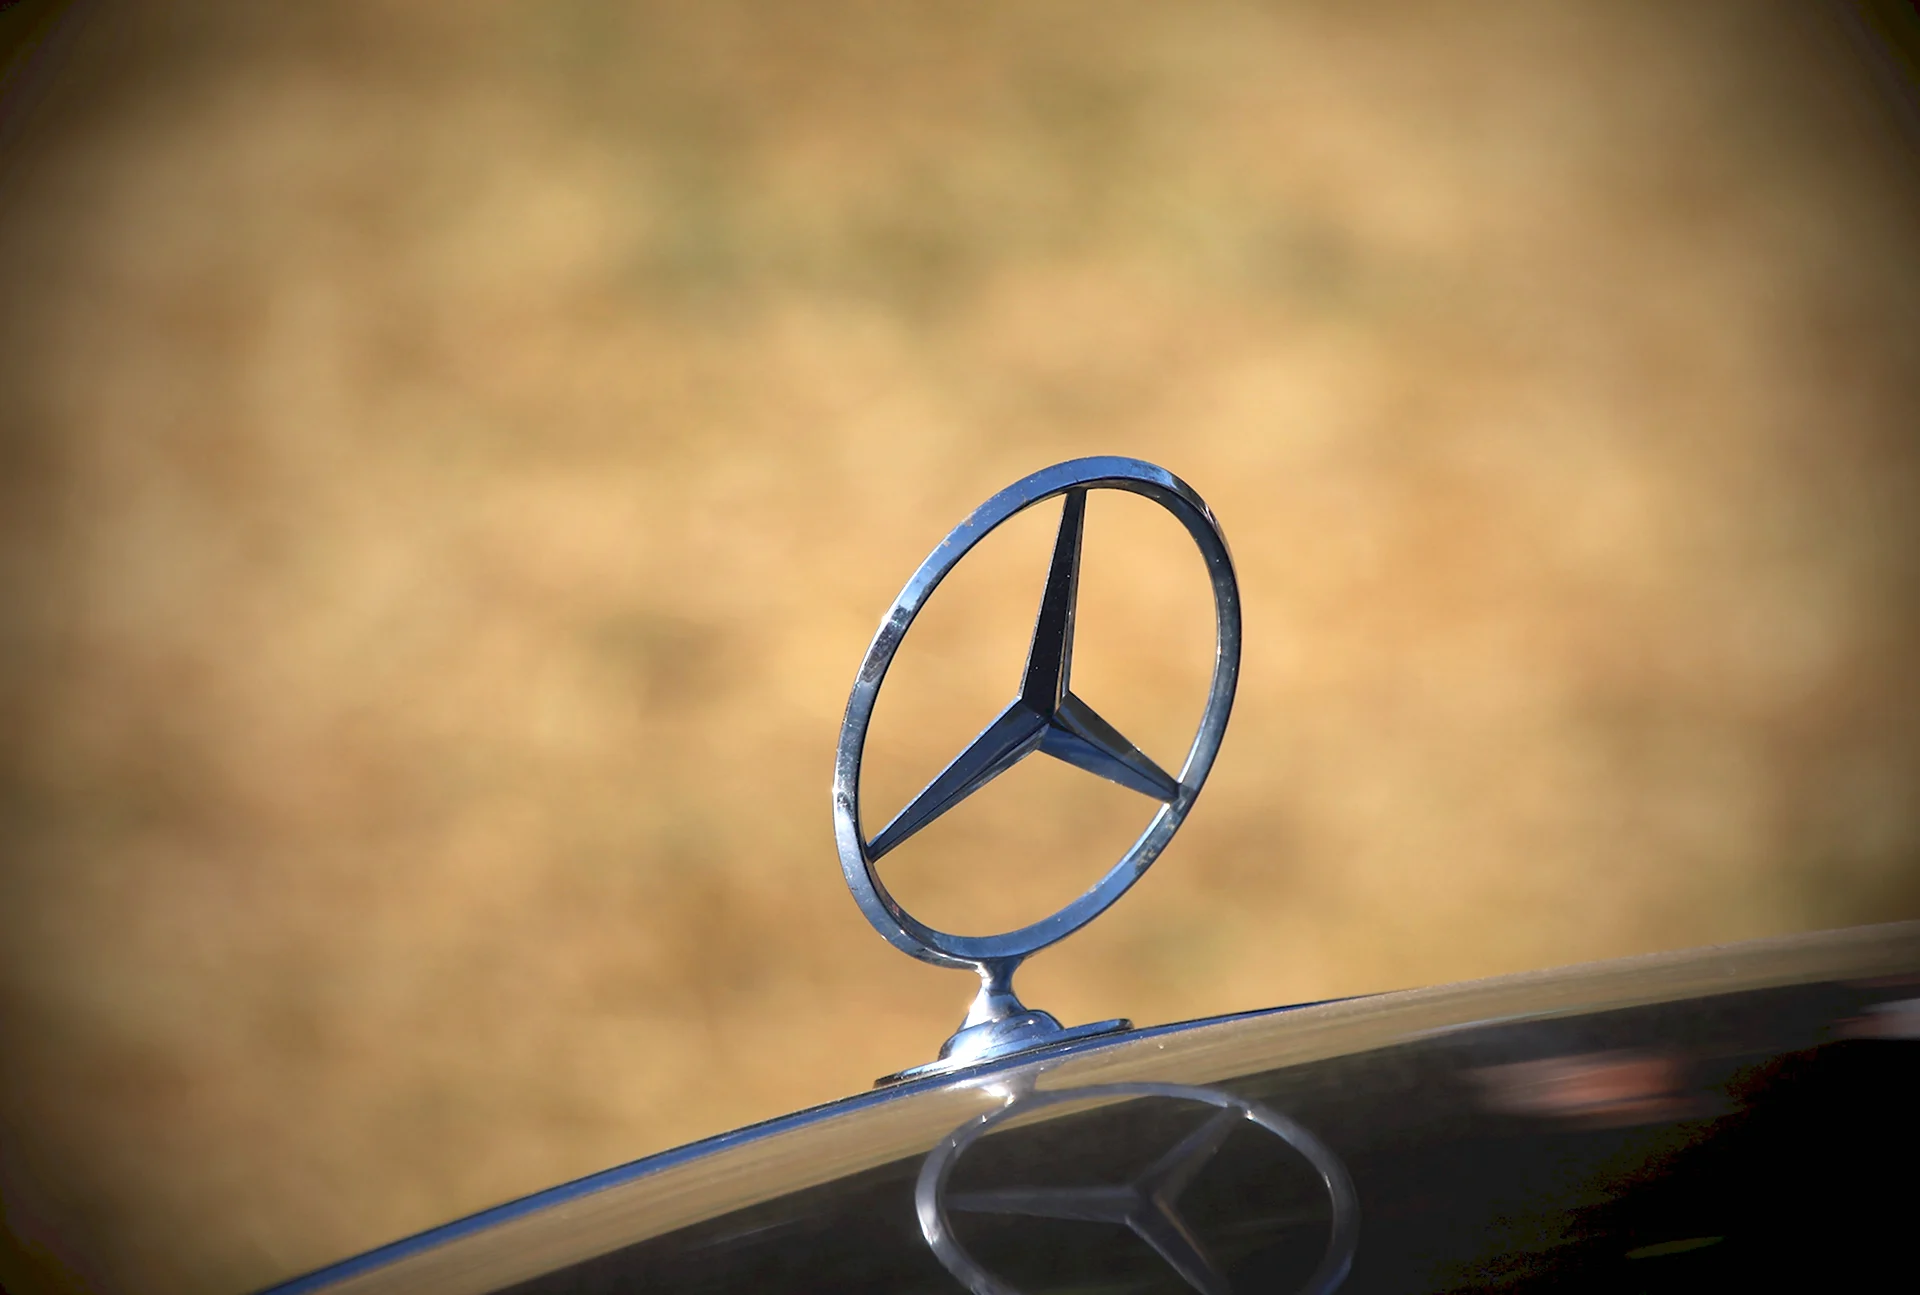 Mercedes Benz symbol